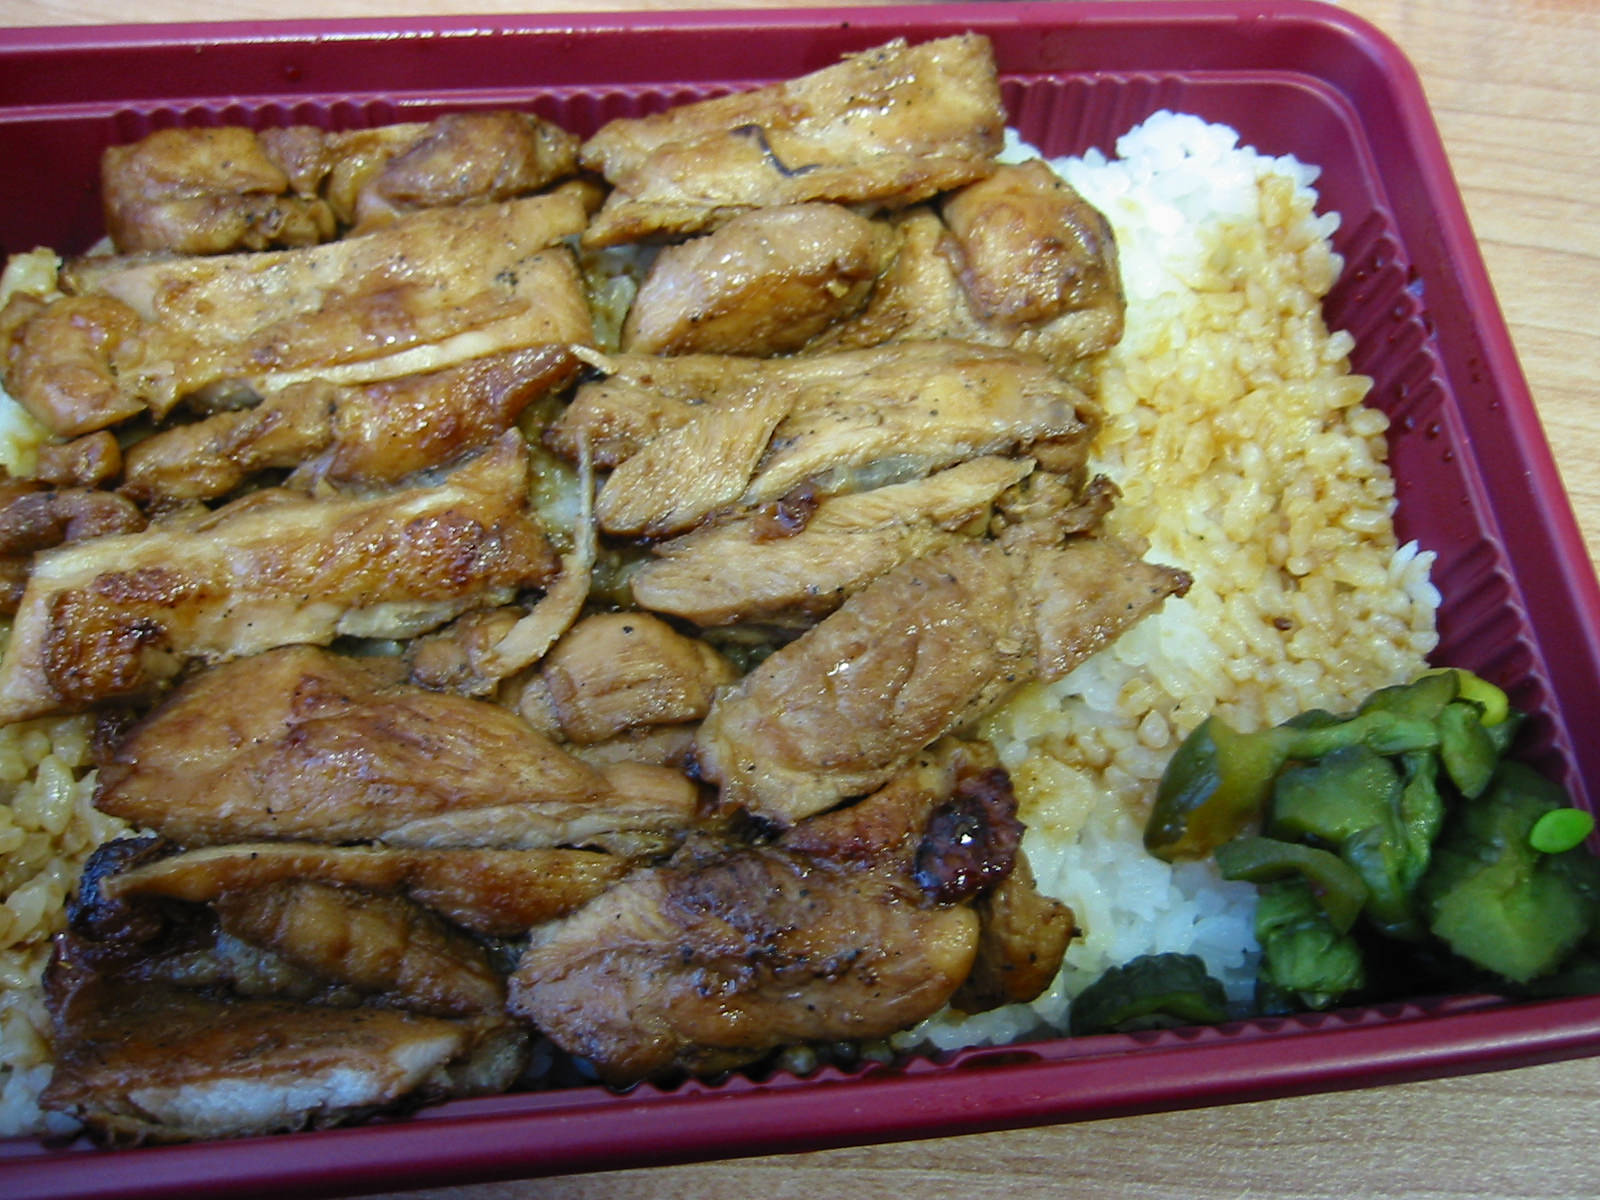 Teriyaki chicken and rice